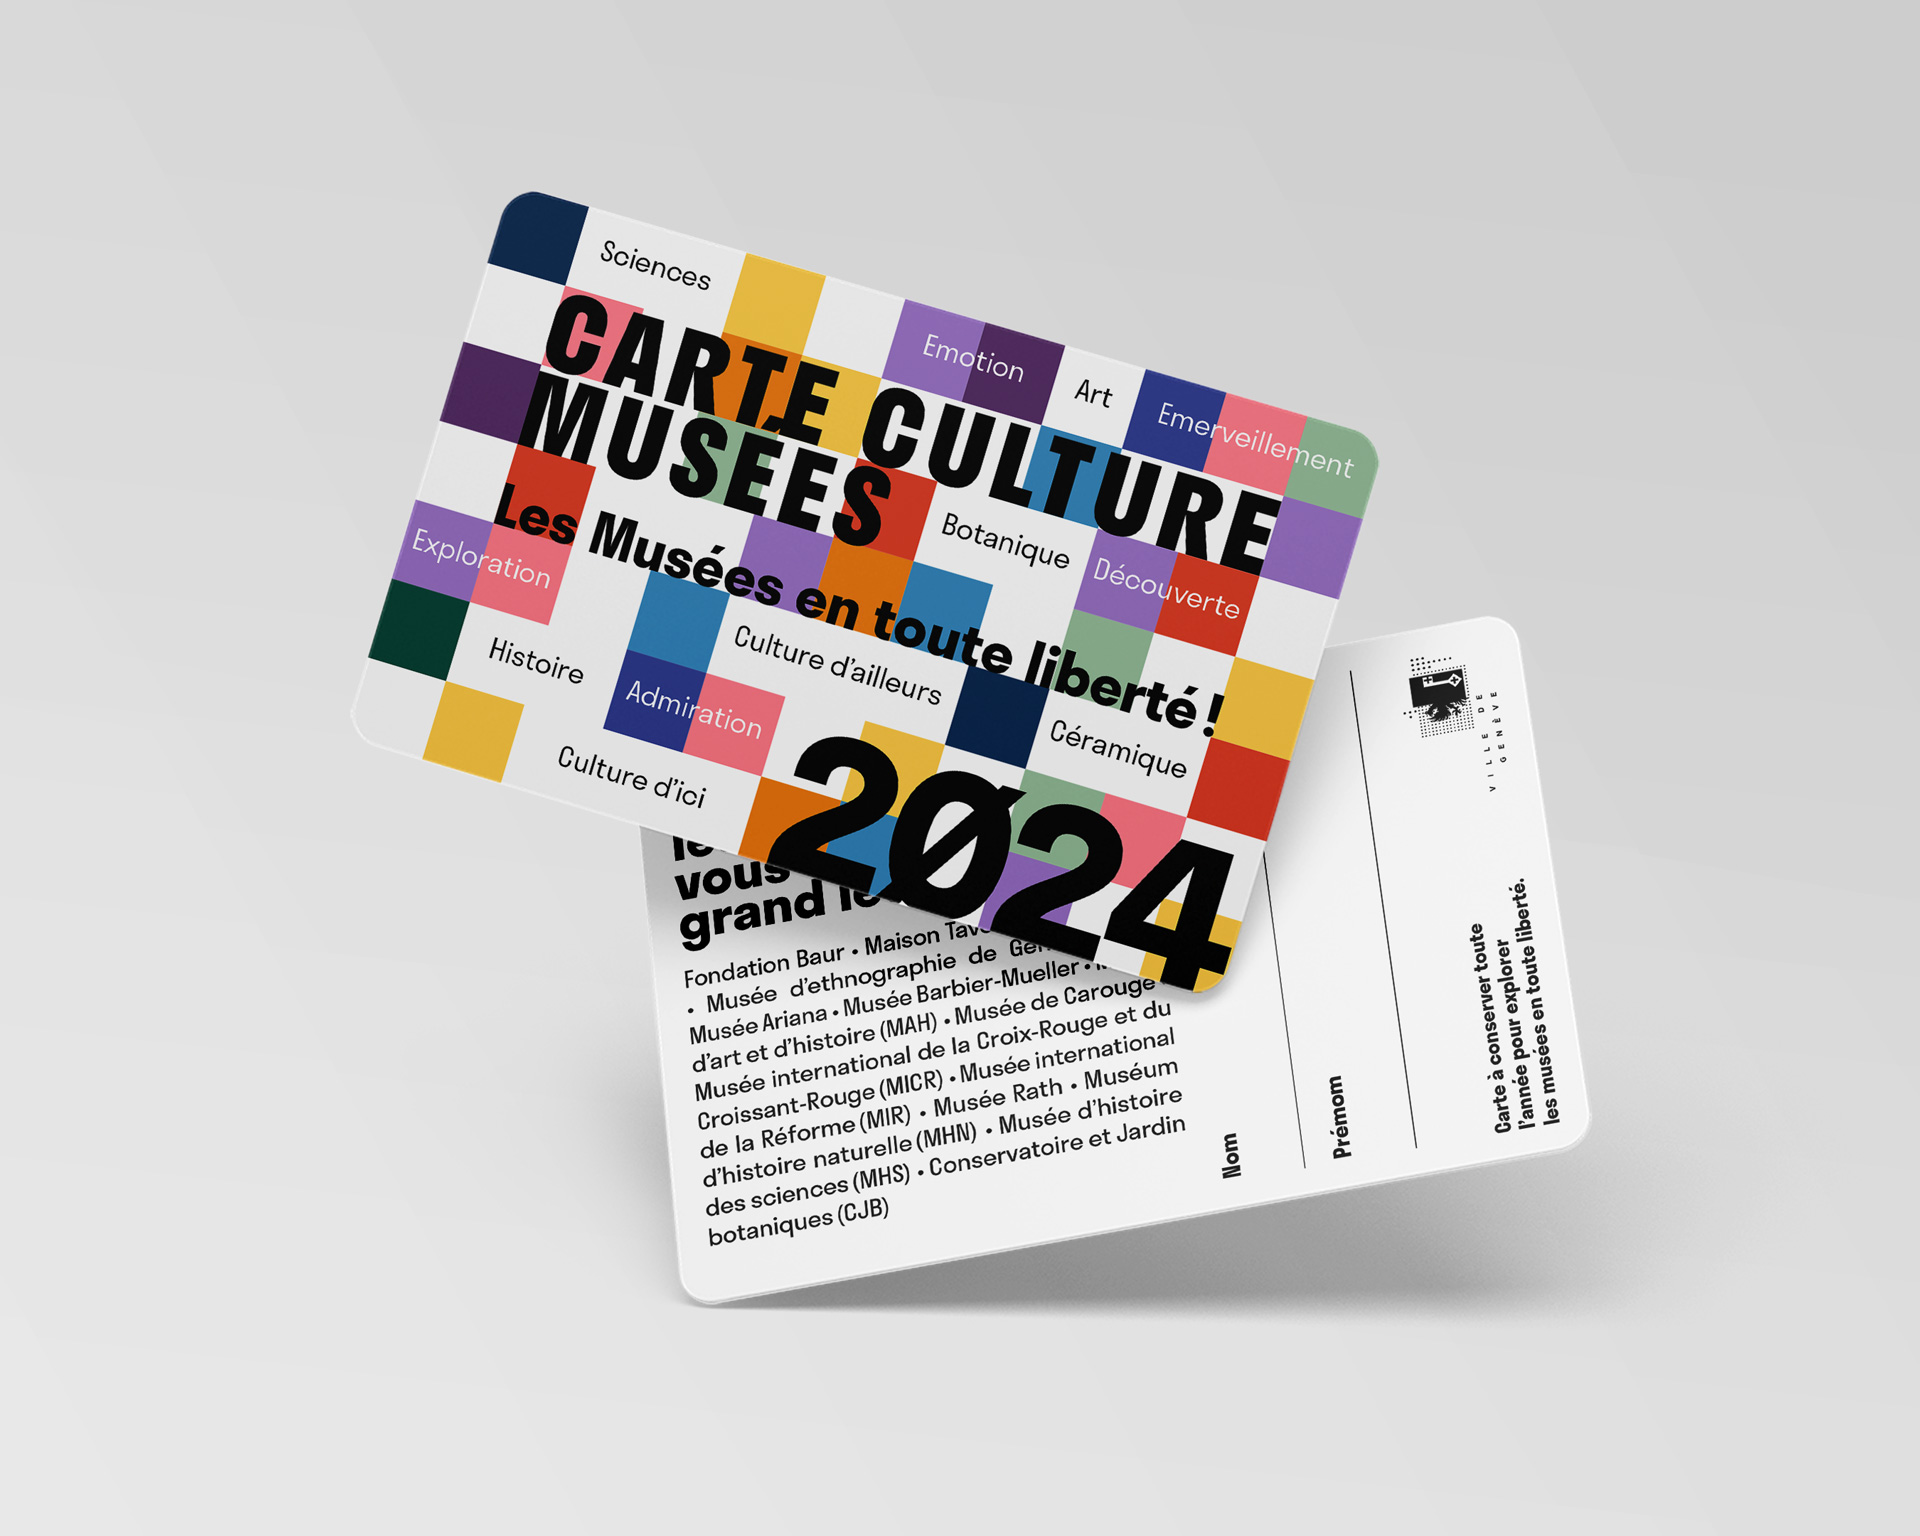 Identité visuelle pour la Carte Culture Musée 2024 – Les Musées en toute liberté!